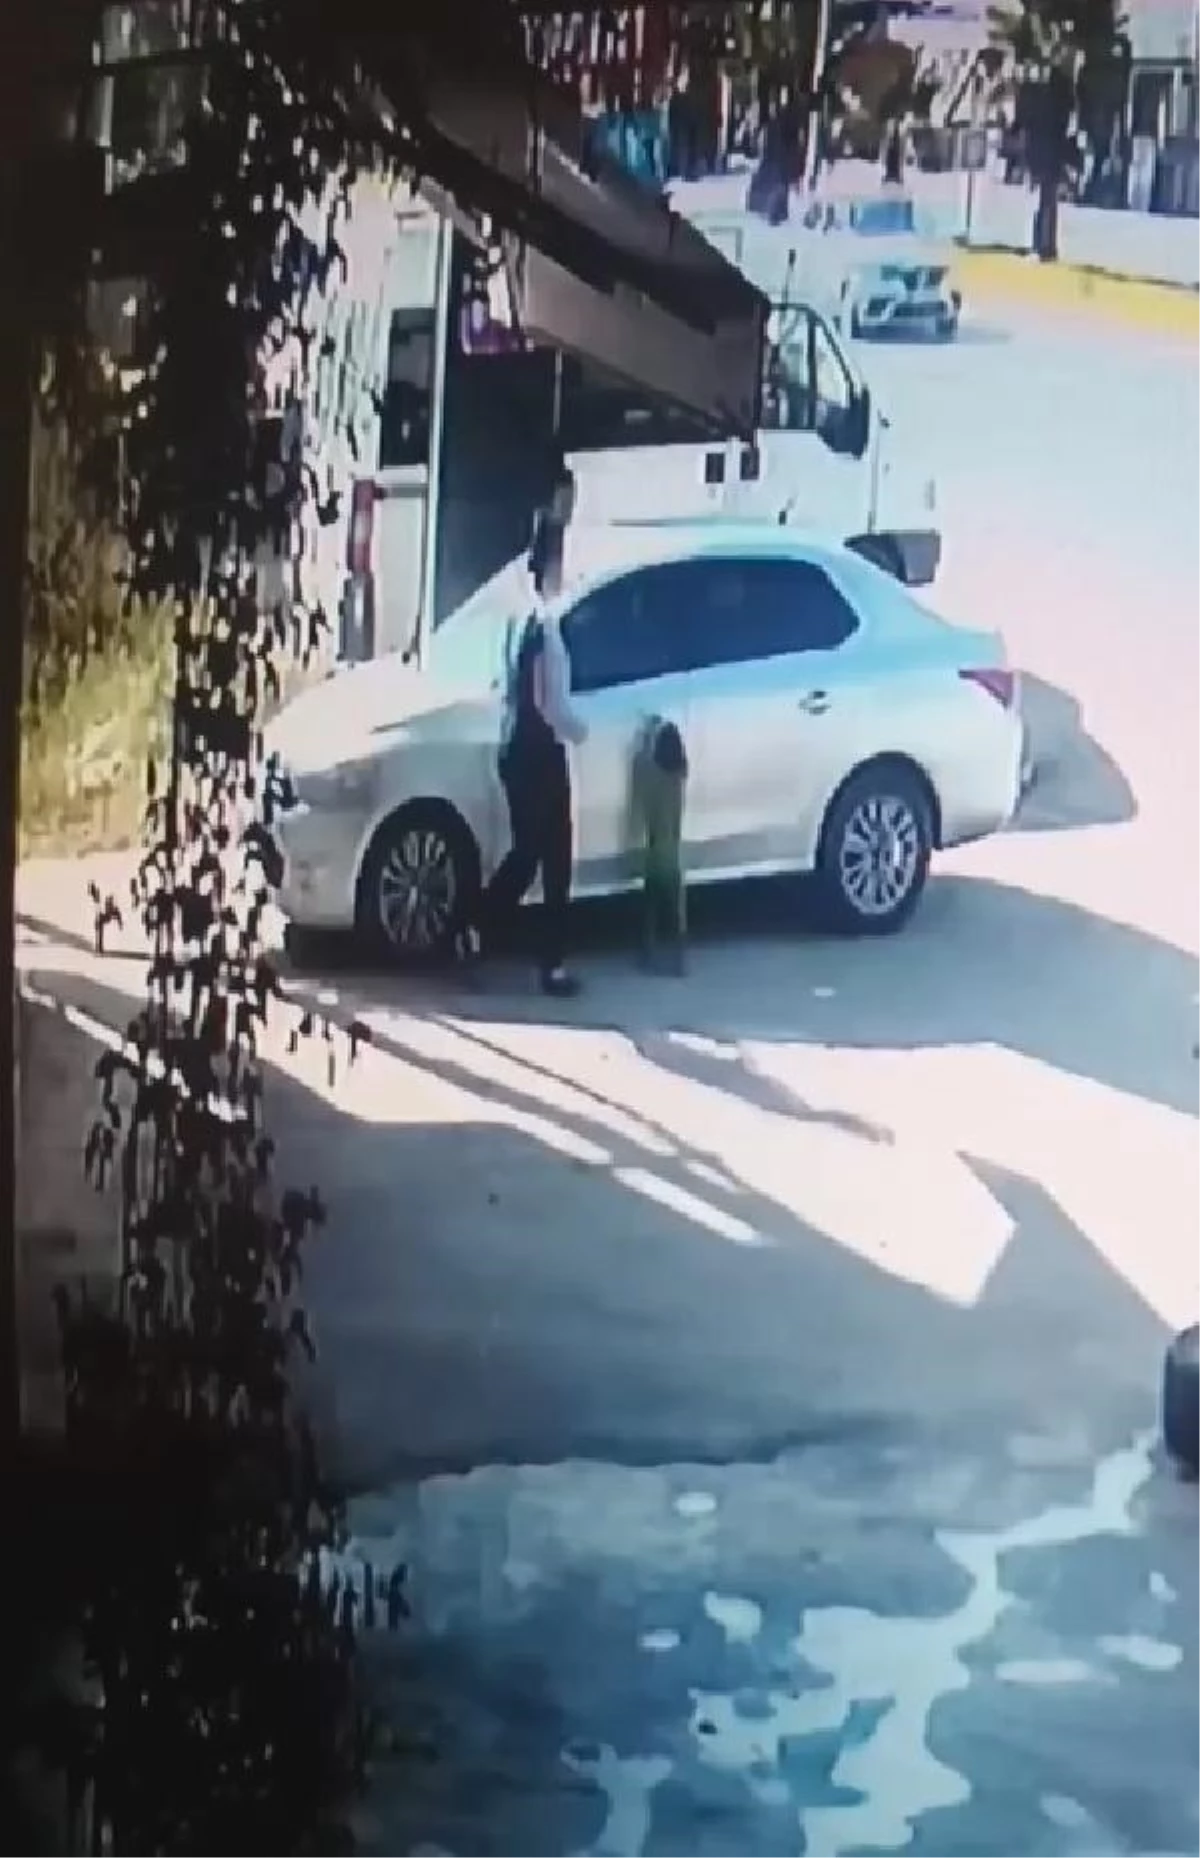 5 yaşındaki çocuk, park halindeki otomobili hareket ettirip duvara çarptı